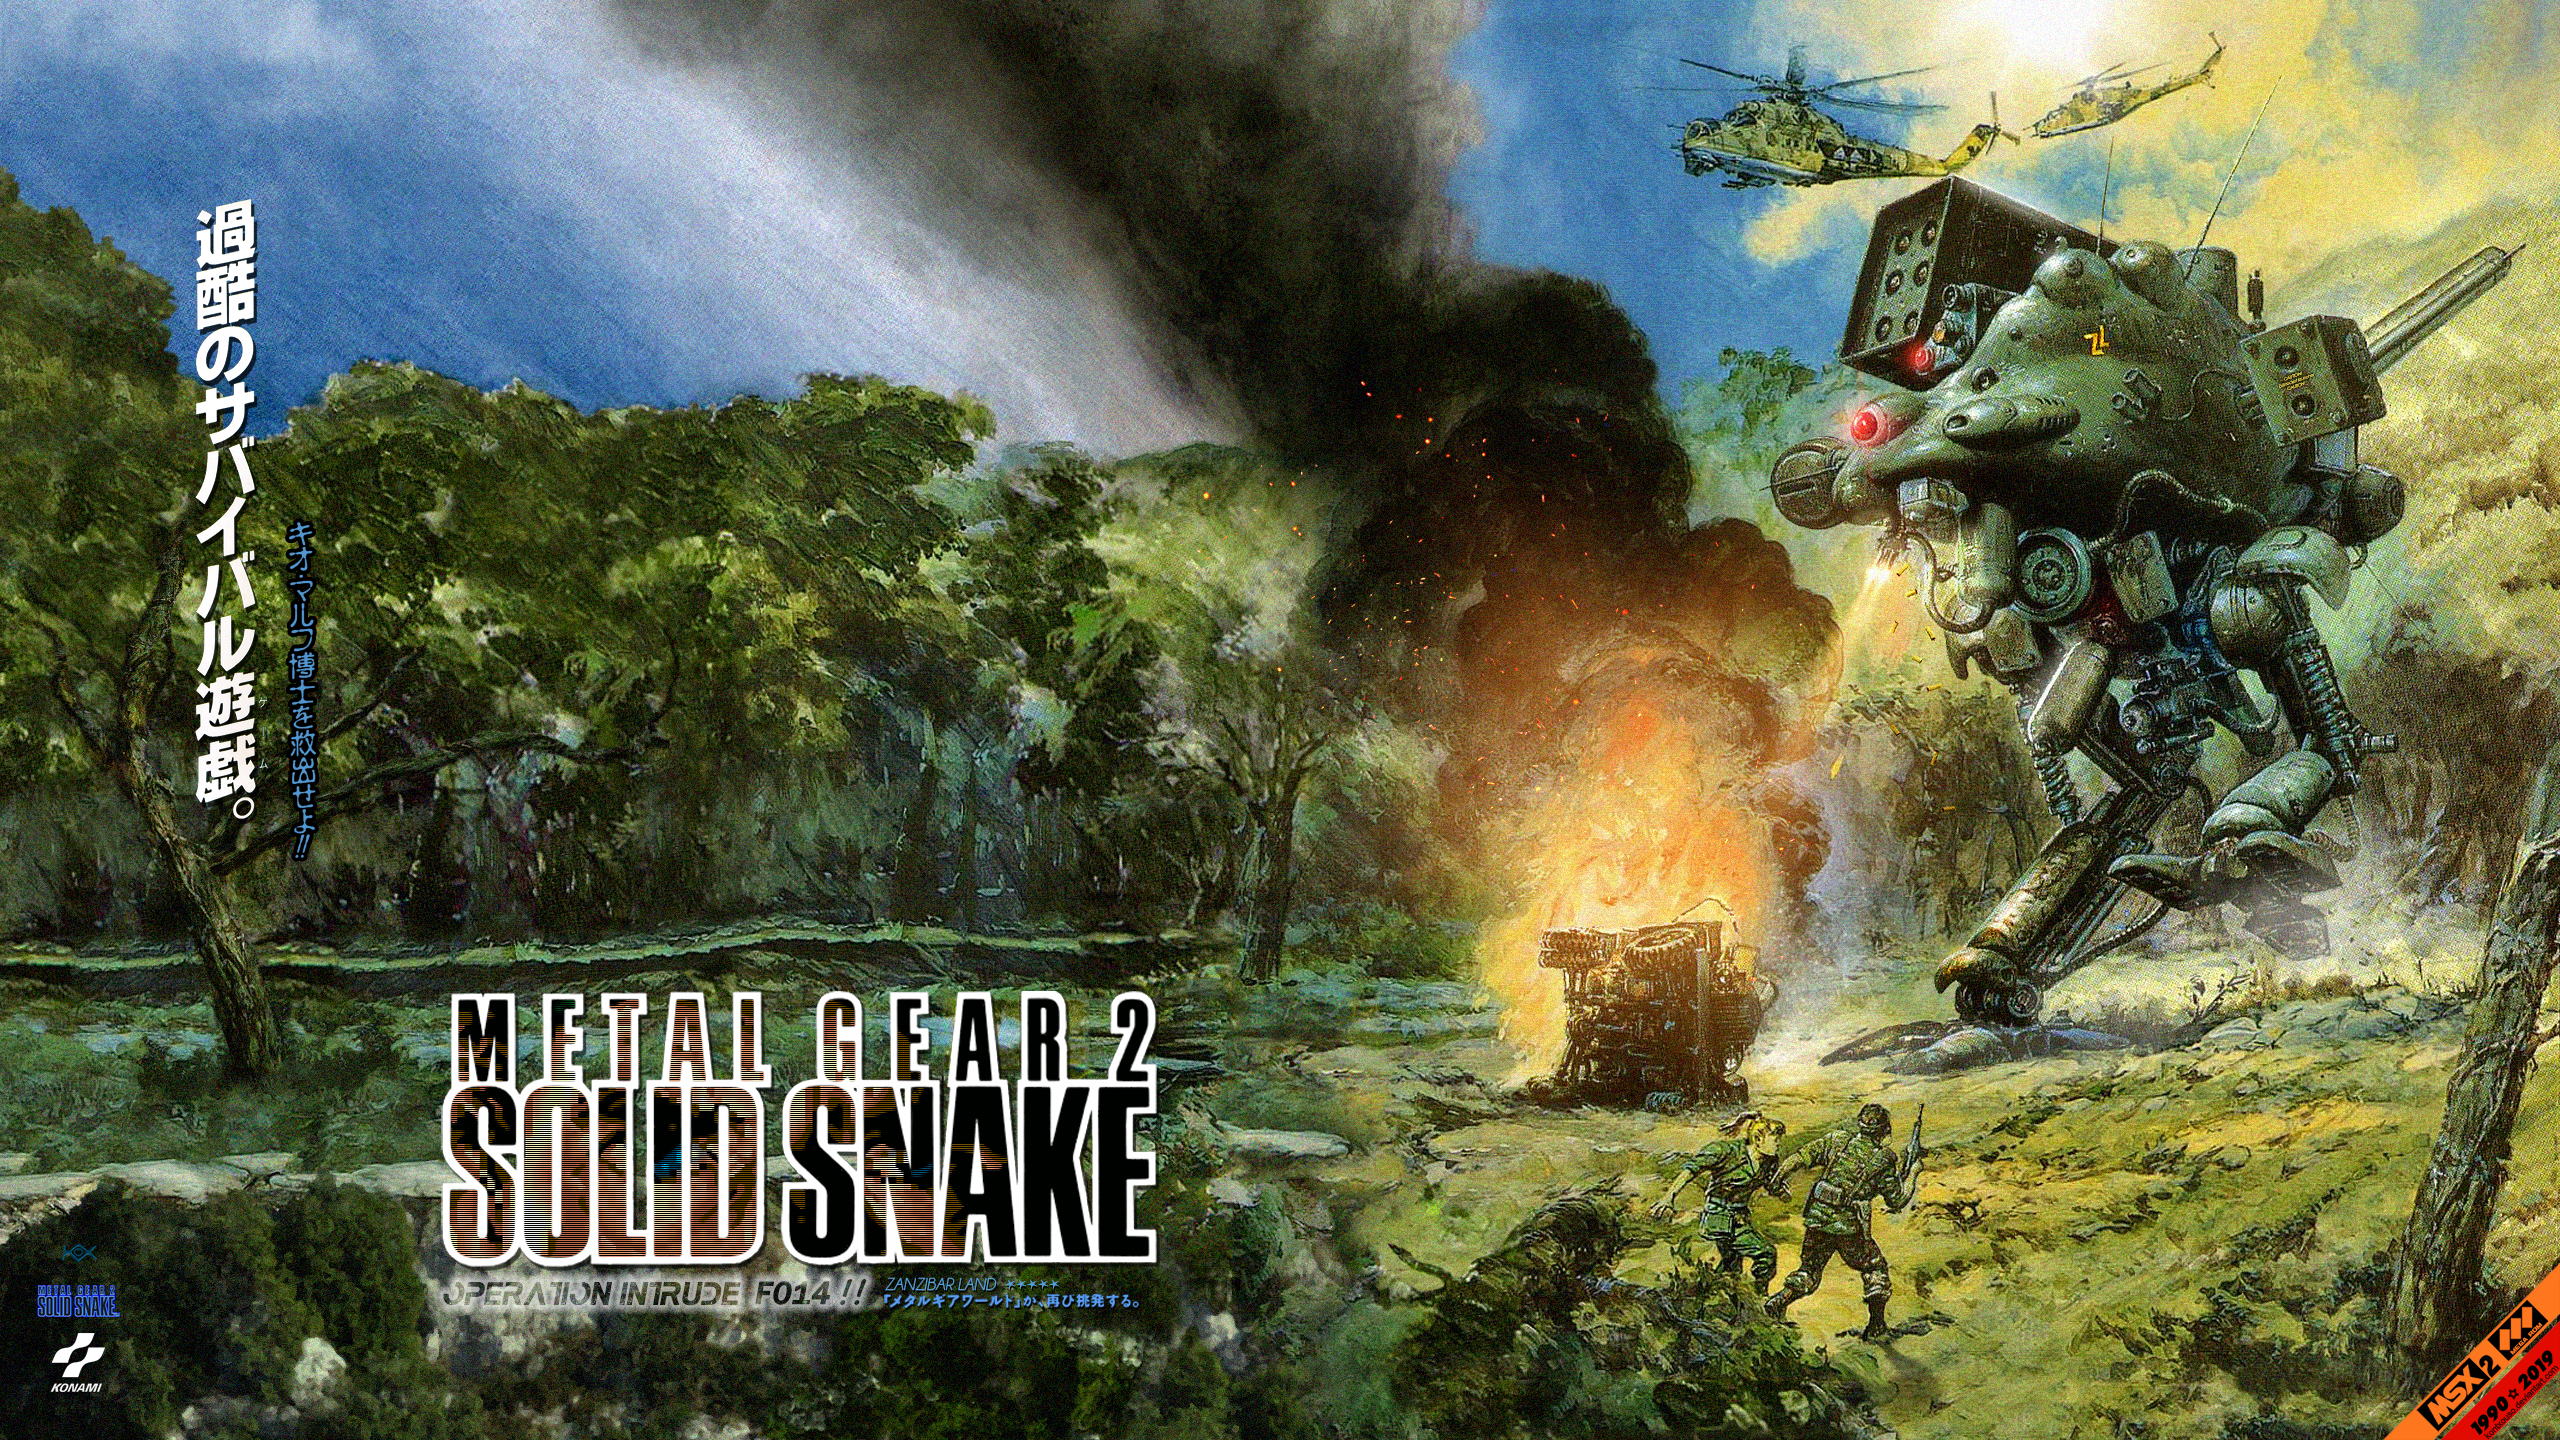 Metal Gear 2: Solid Snake - MSX2 - 1440p by kontxouso on DeviantArt